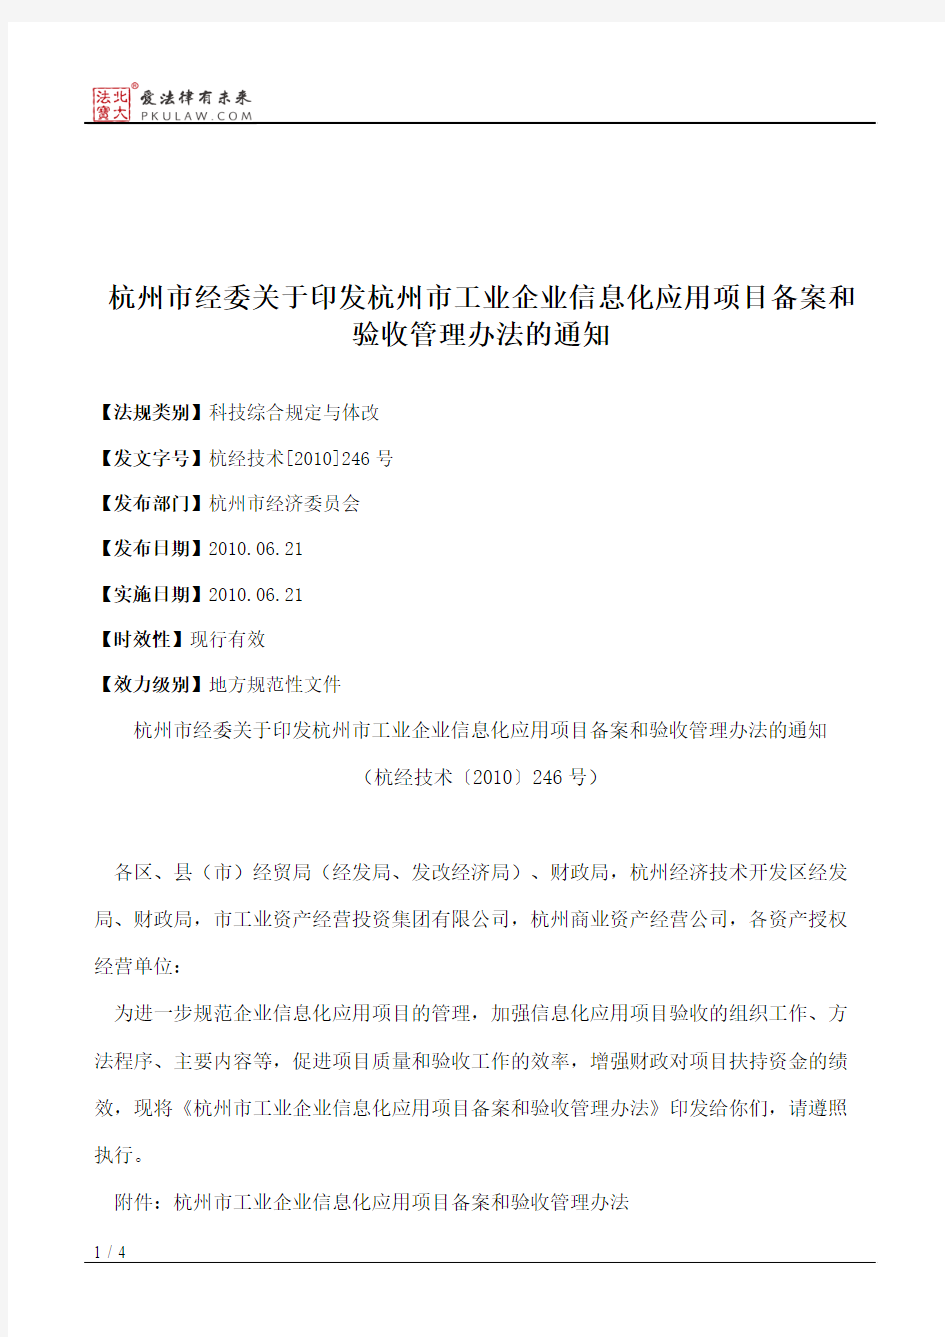 杭州市经委关于印发杭州市工业企业信息化应用项目备案和验收管理